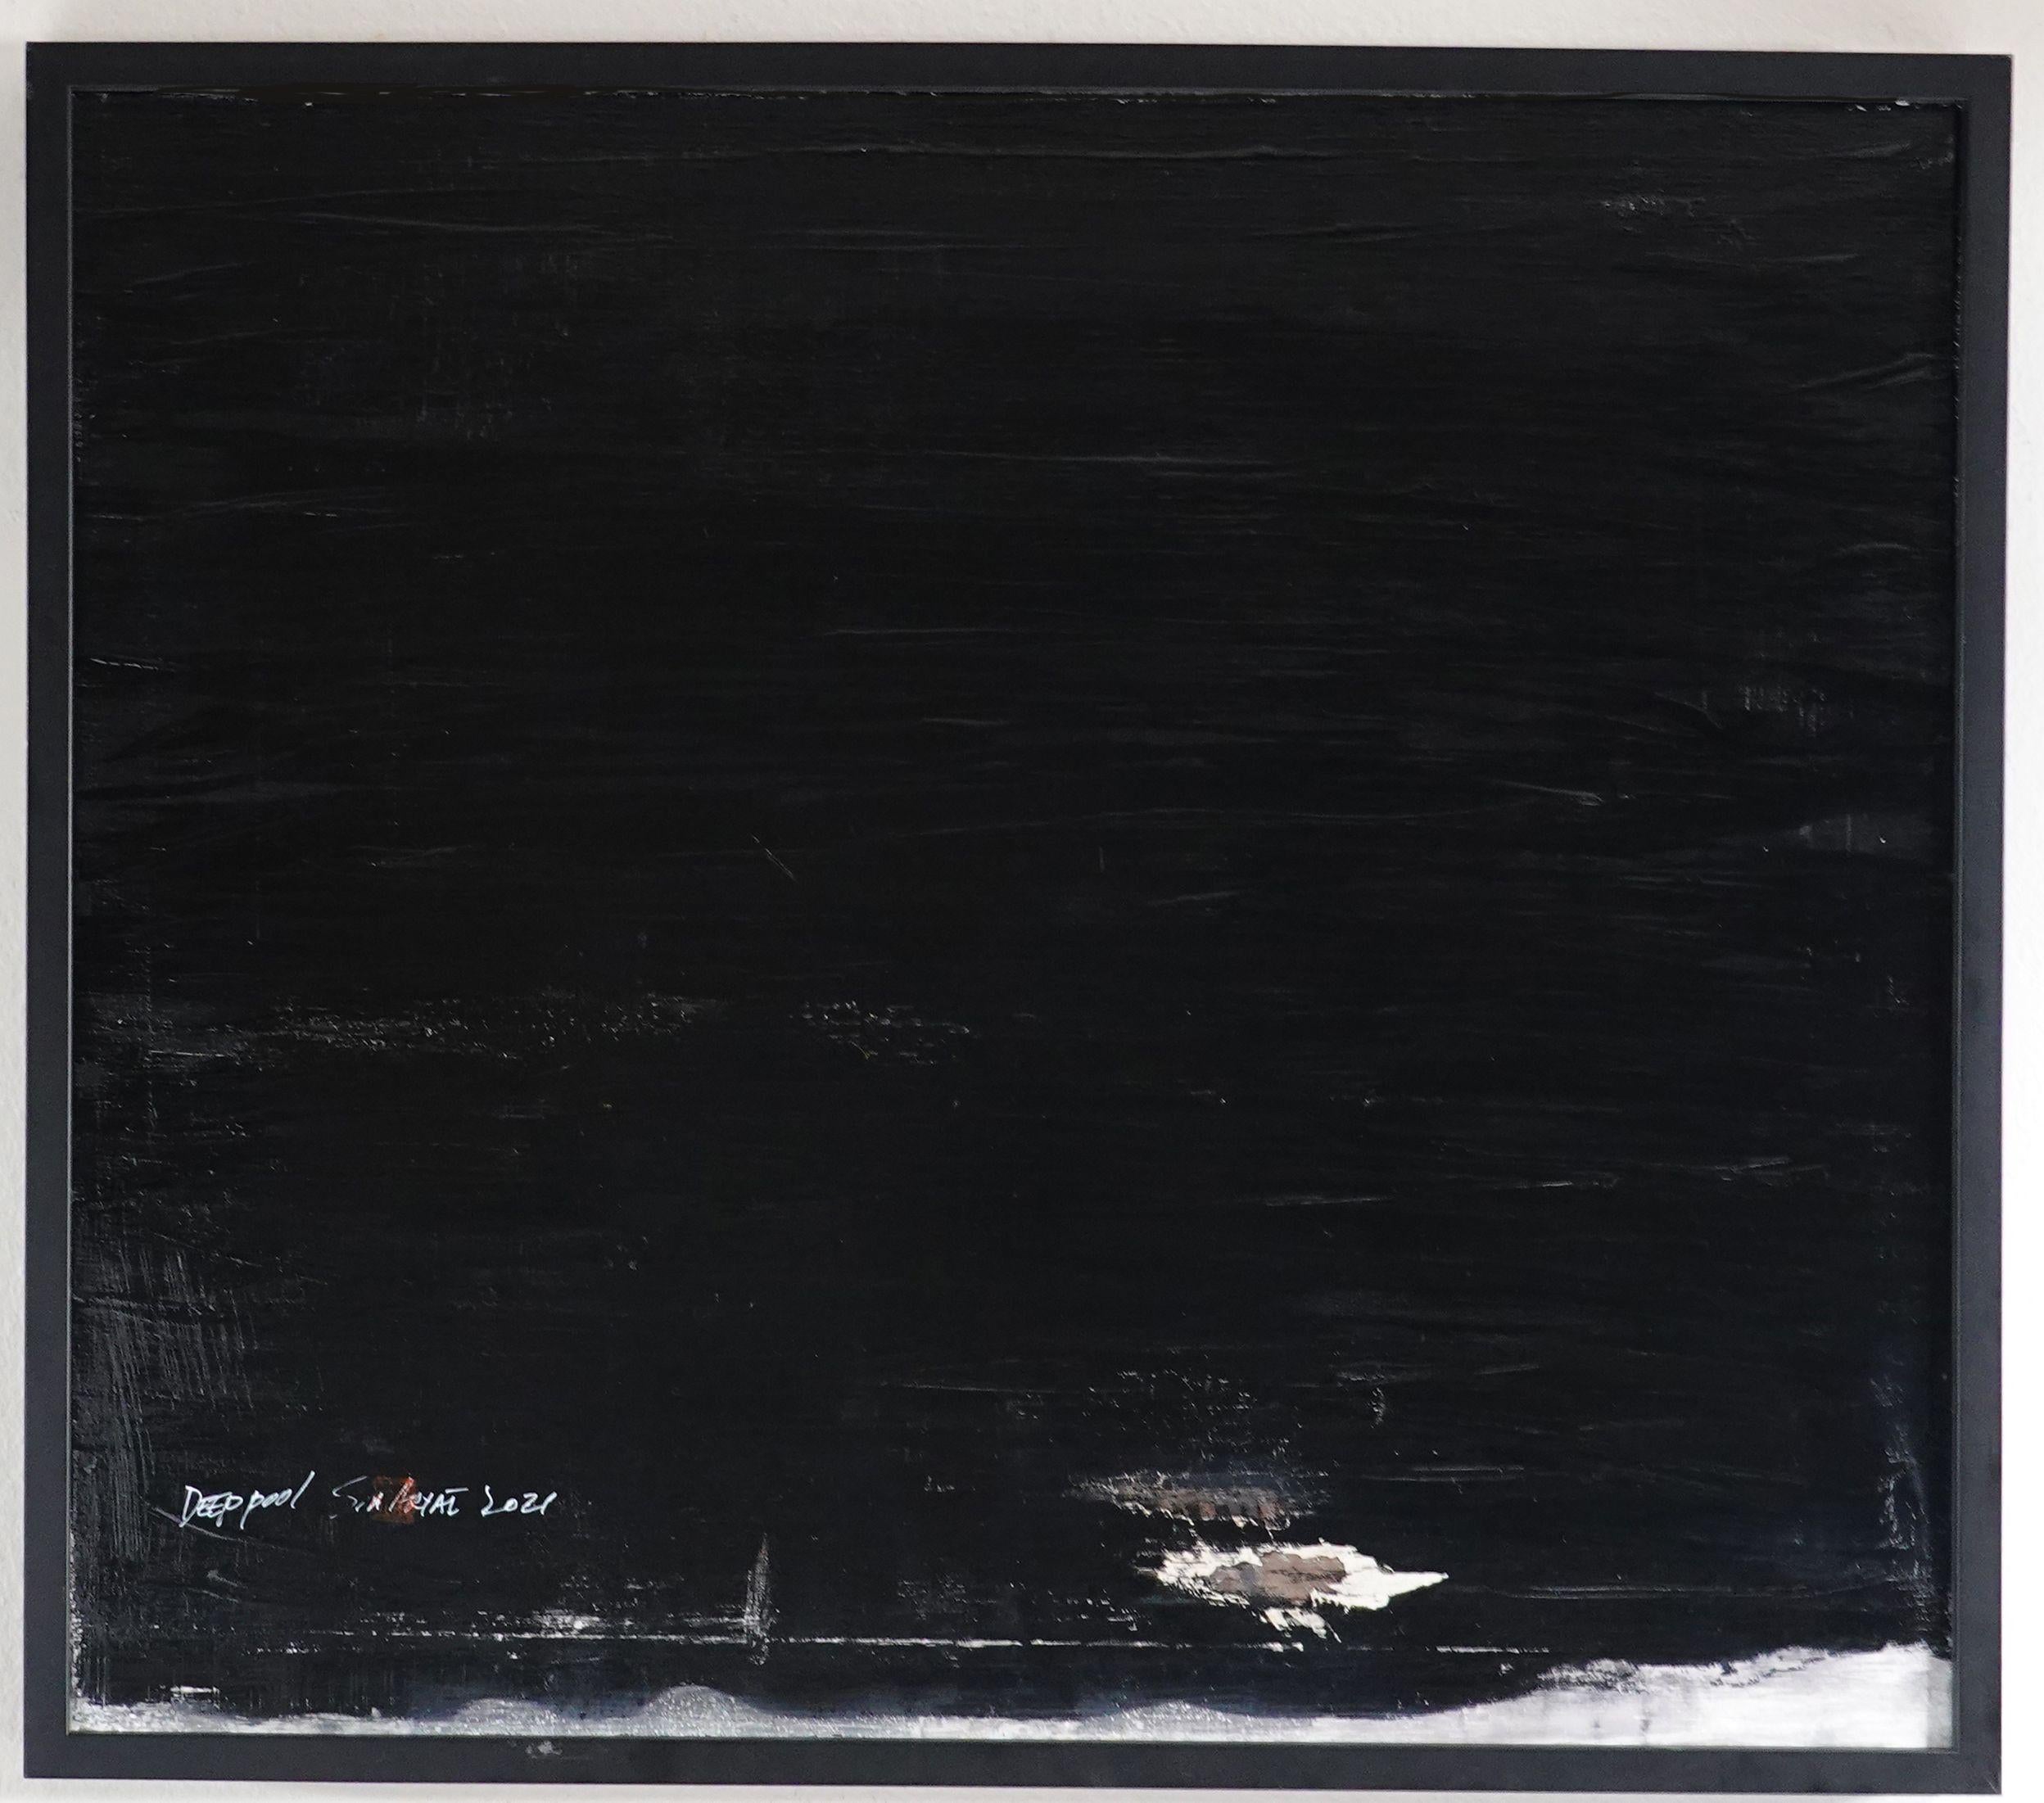 Sia Aryai Abstract Painting – Deep Pool Sechs schwarze gerahmte Gemälde, Acryl auf Leinwand